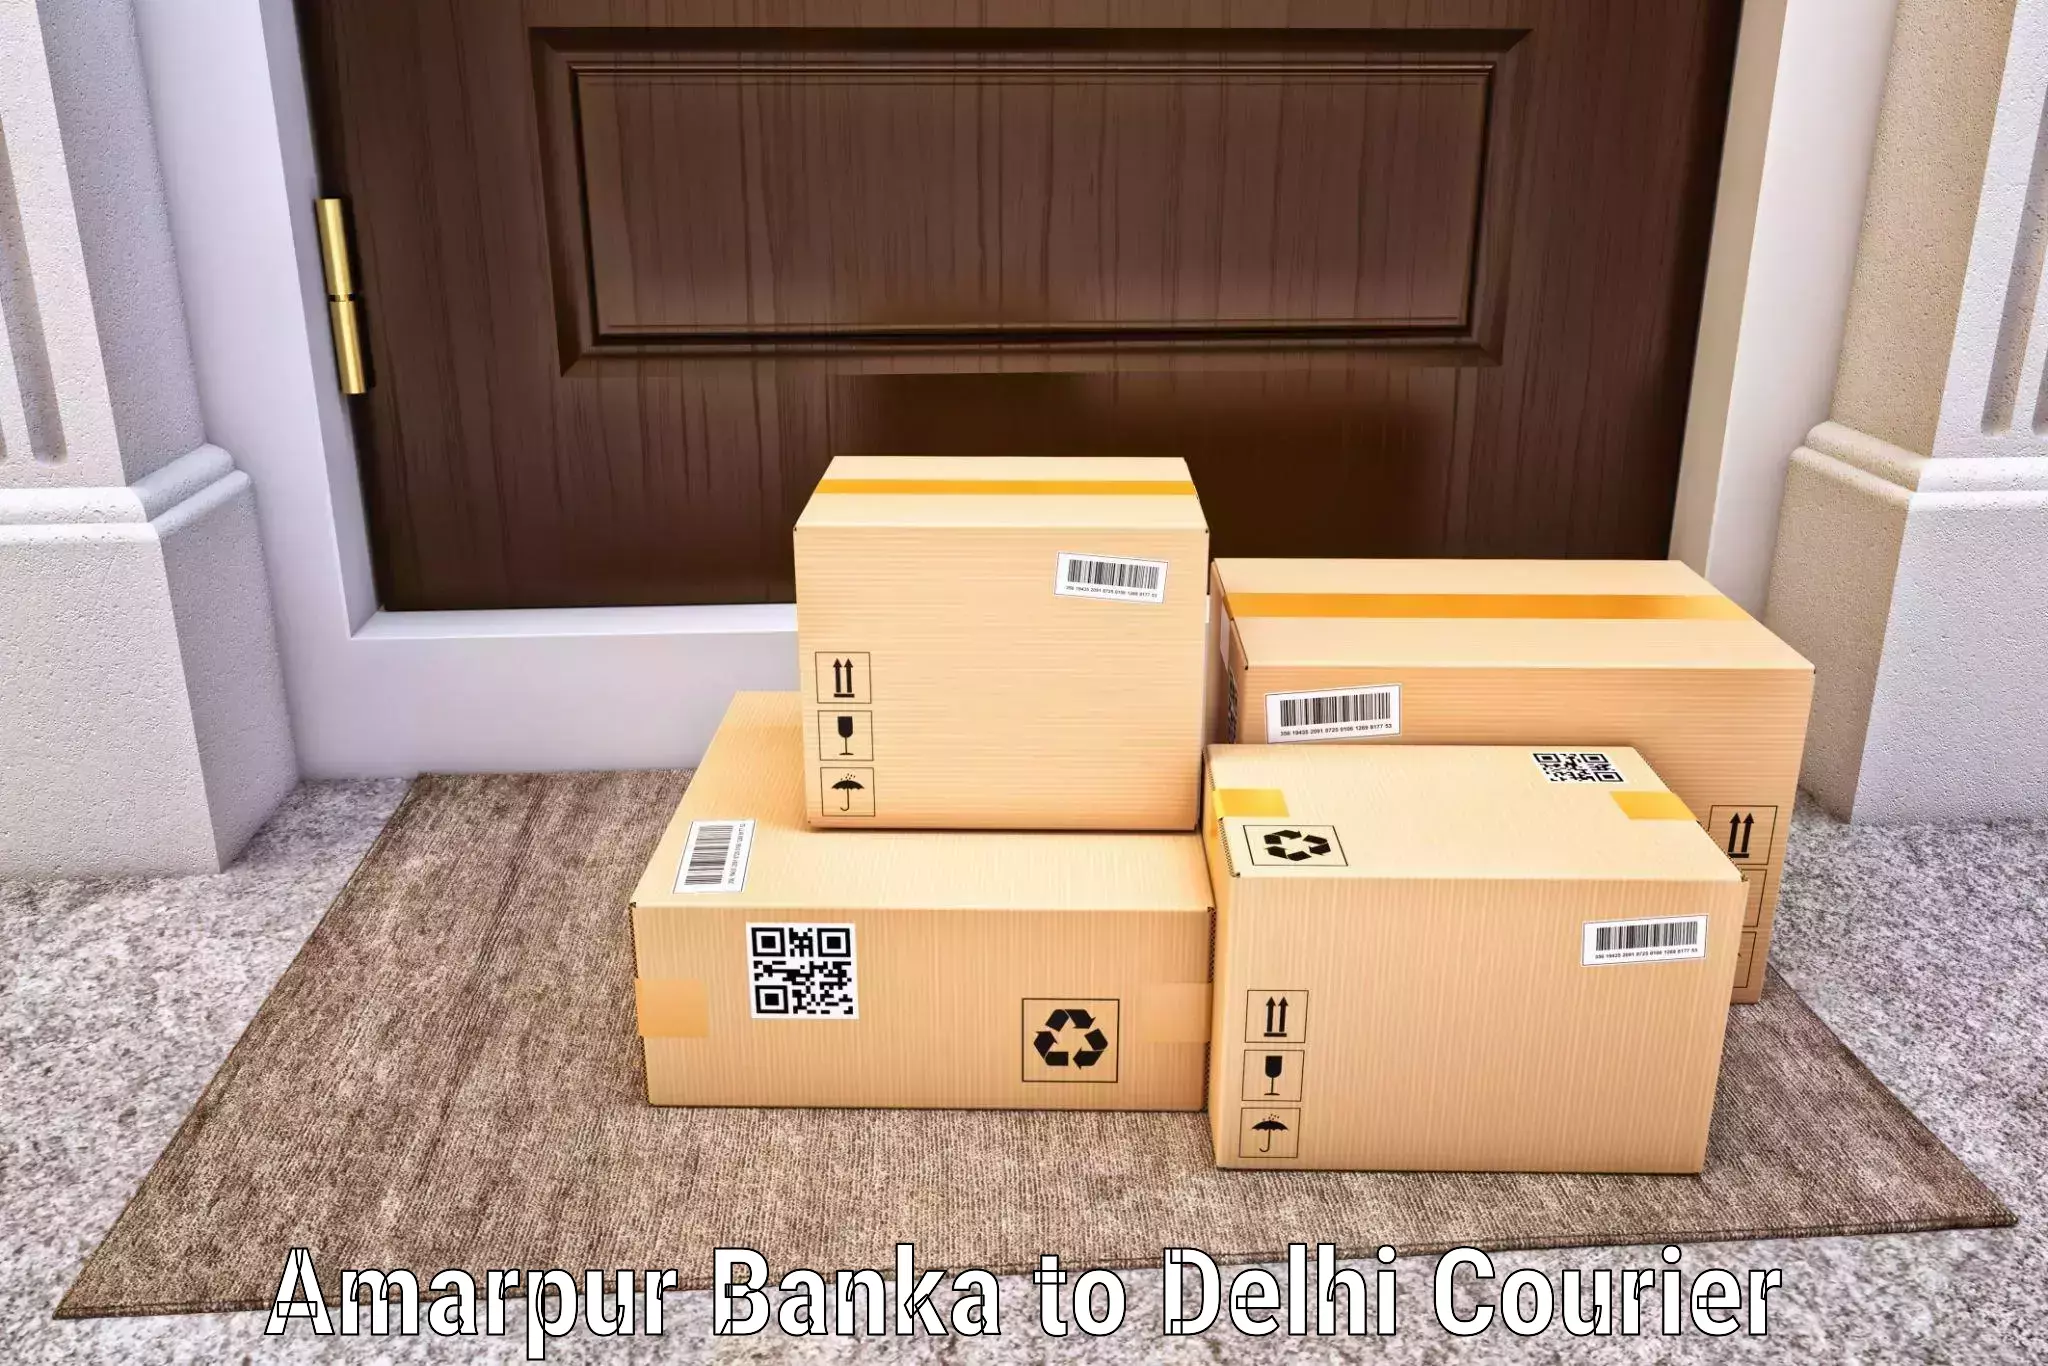 Door-to-door freight service Amarpur Banka to Delhi